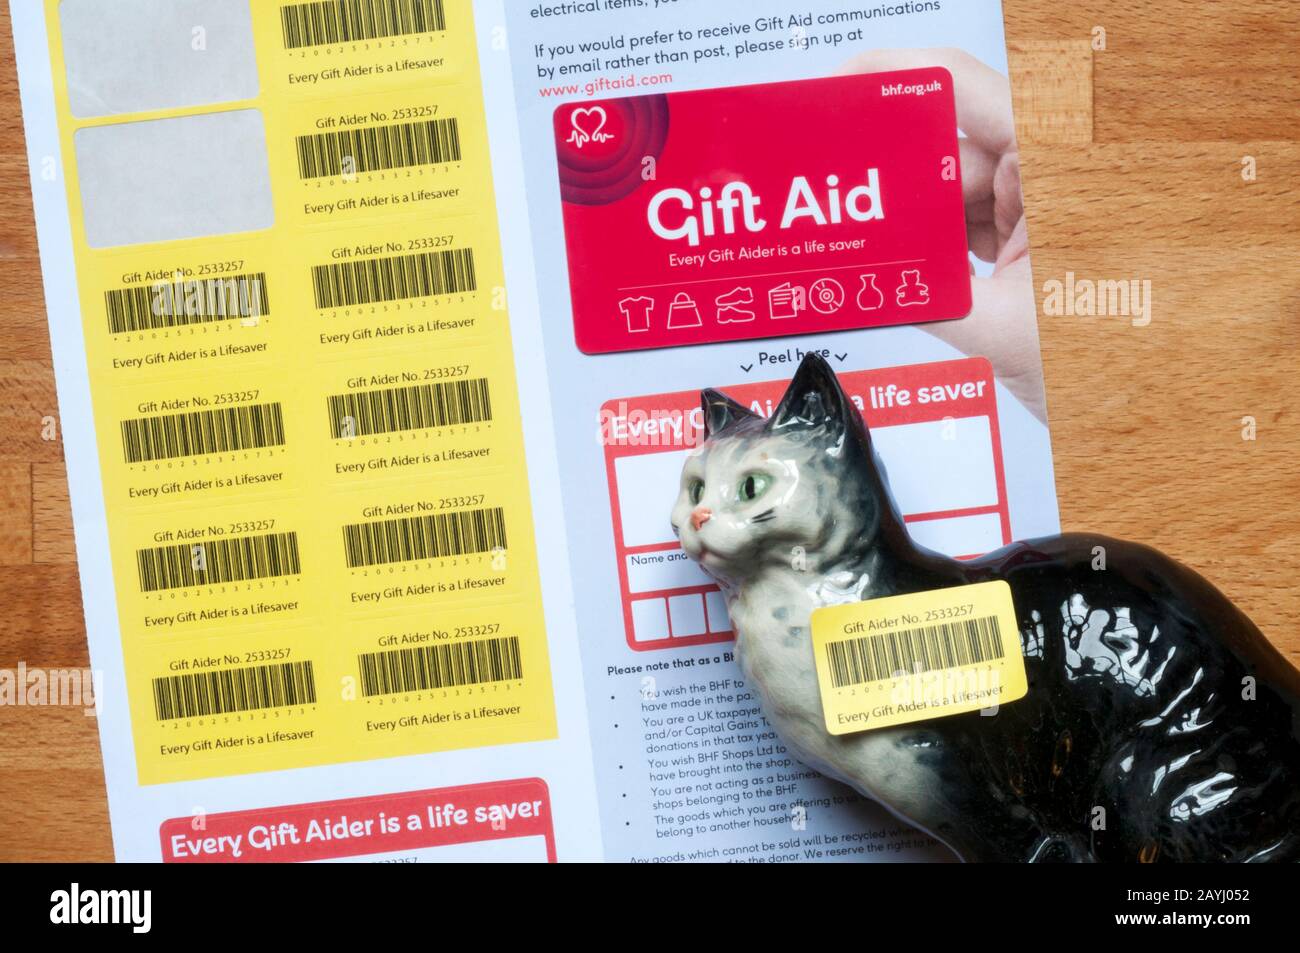 Un ornamento de gato de porcelana con una pegatina De Gift Aid para donación a la organización benéfica de la British Heart Foundation. Foto de stock